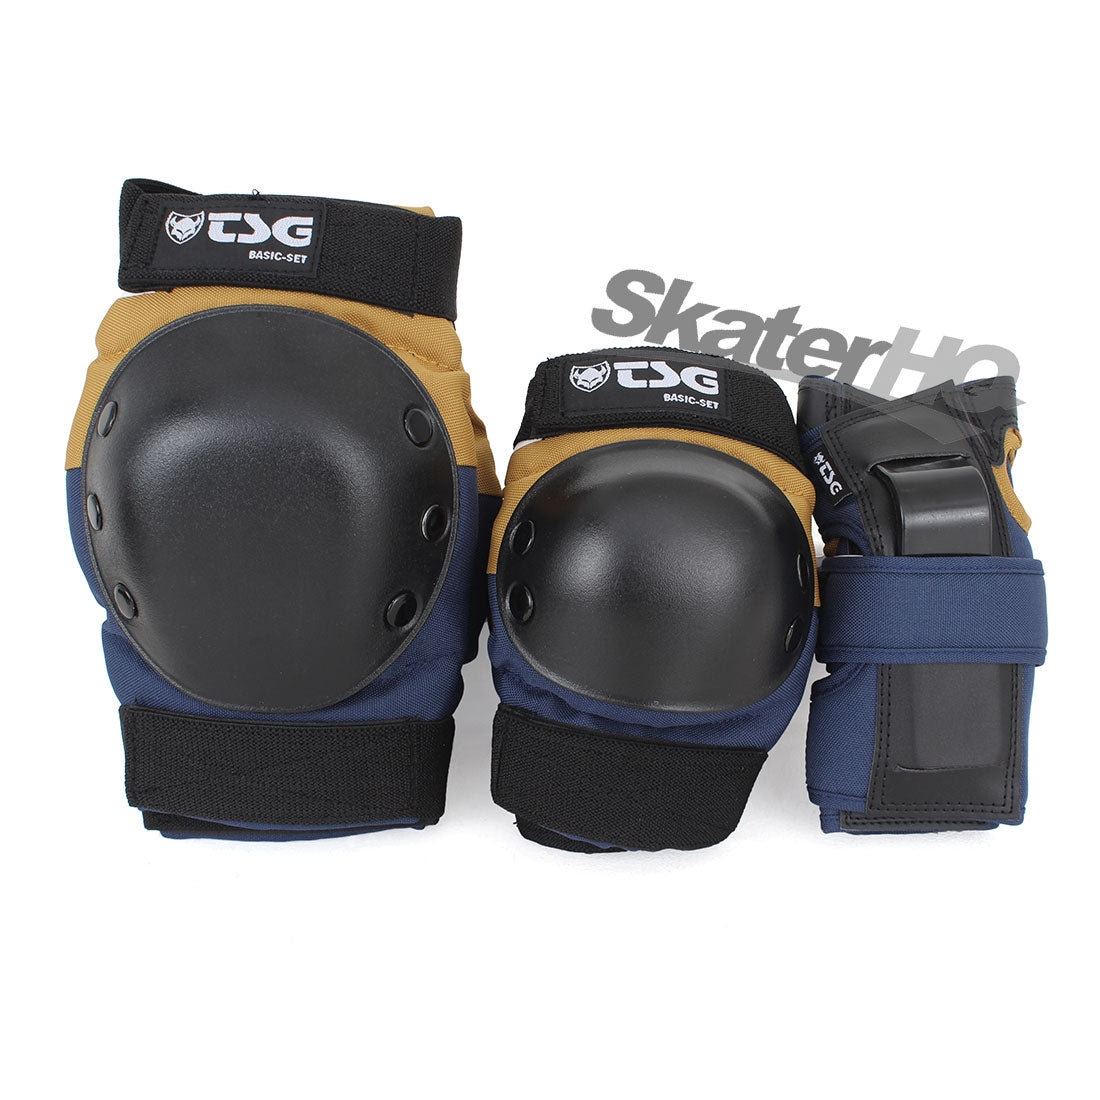 TSG Basic Skate Set Navy/Tan - Medium Protective Gear